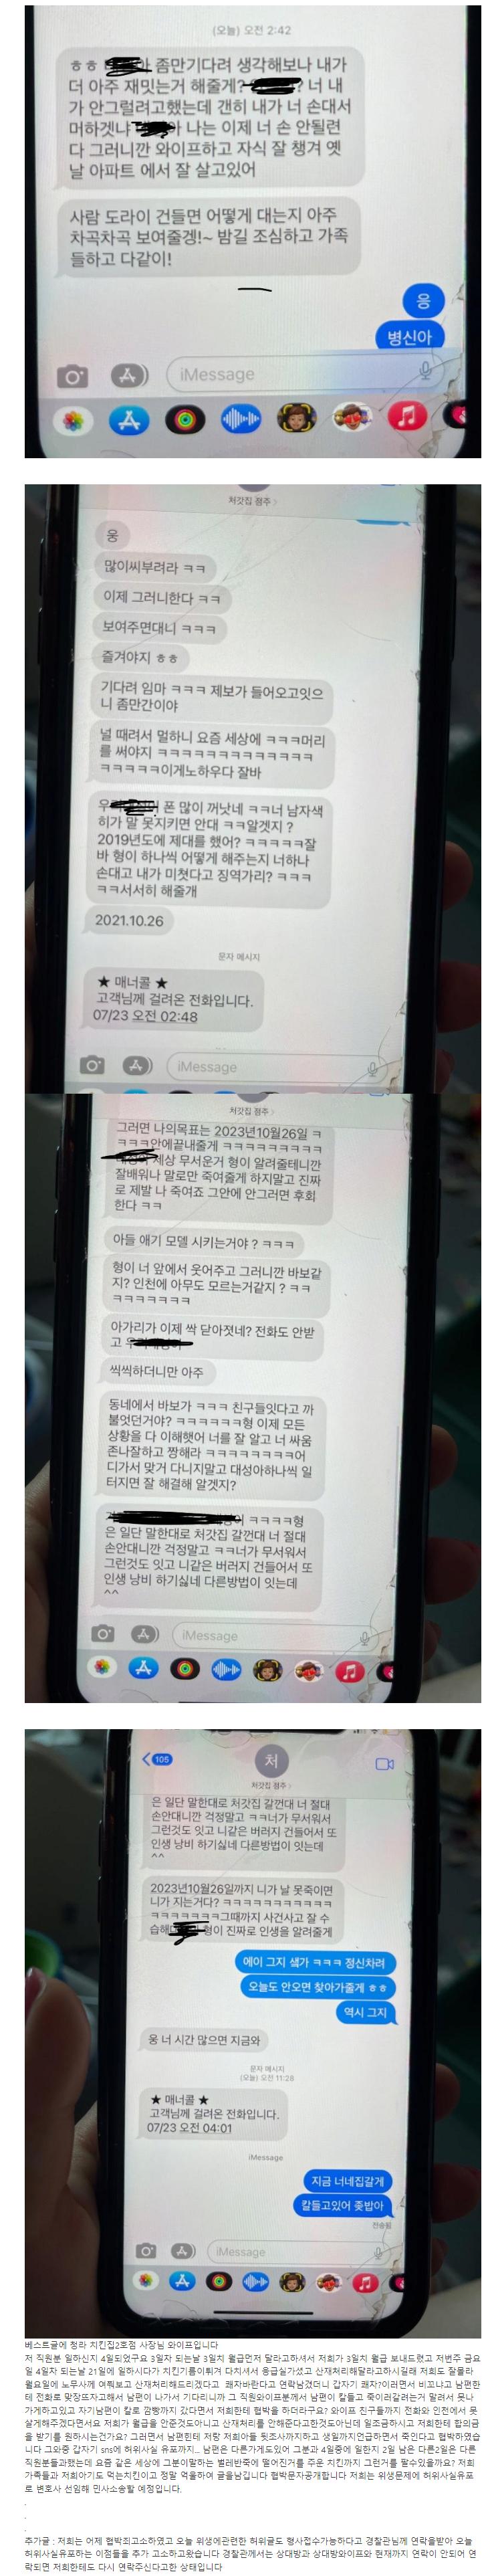 인천 치킨집 저격, 협박과 해명글 근황